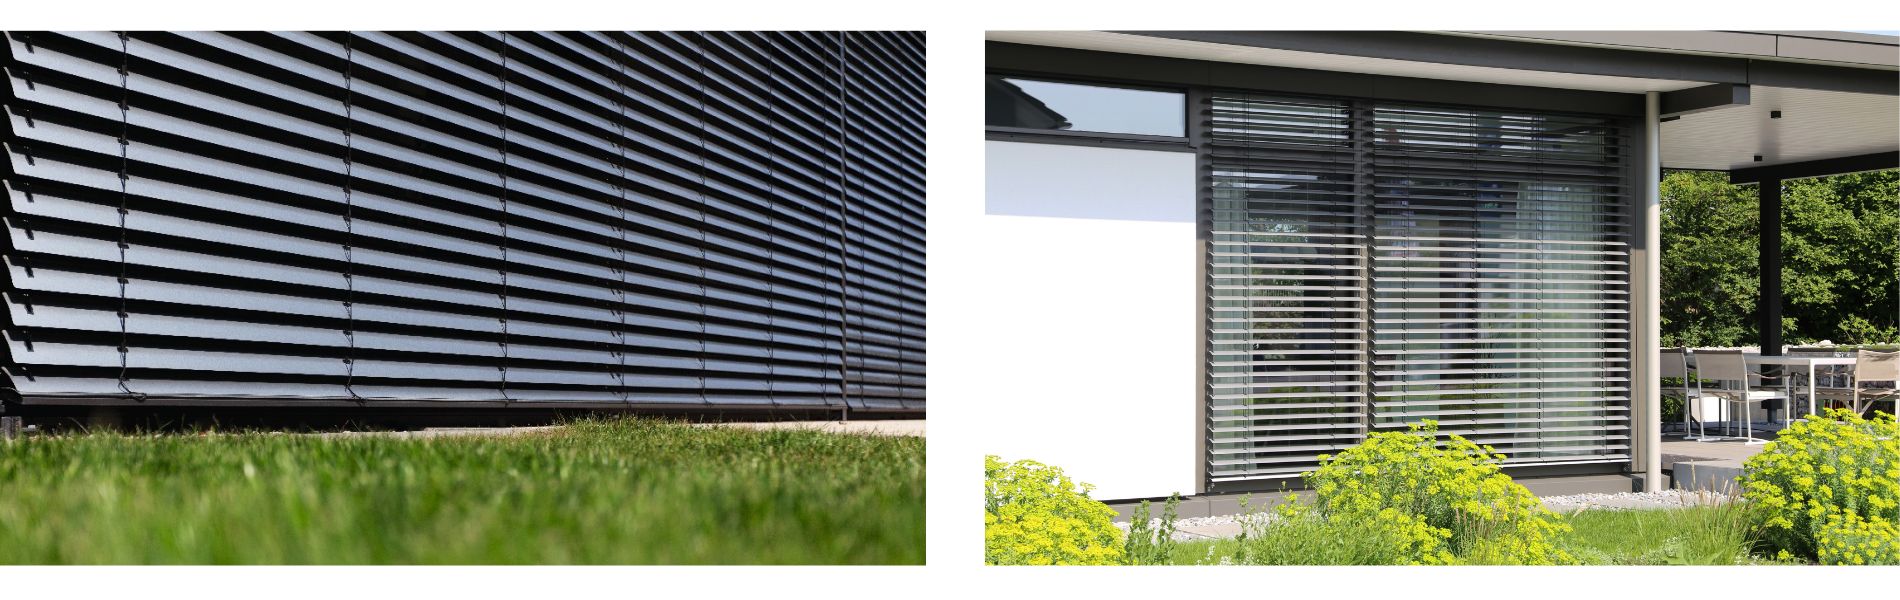 Fasado žaliuzės, modernu, apsauga nuo saulės, fasado įvaizdžio gerinimas 